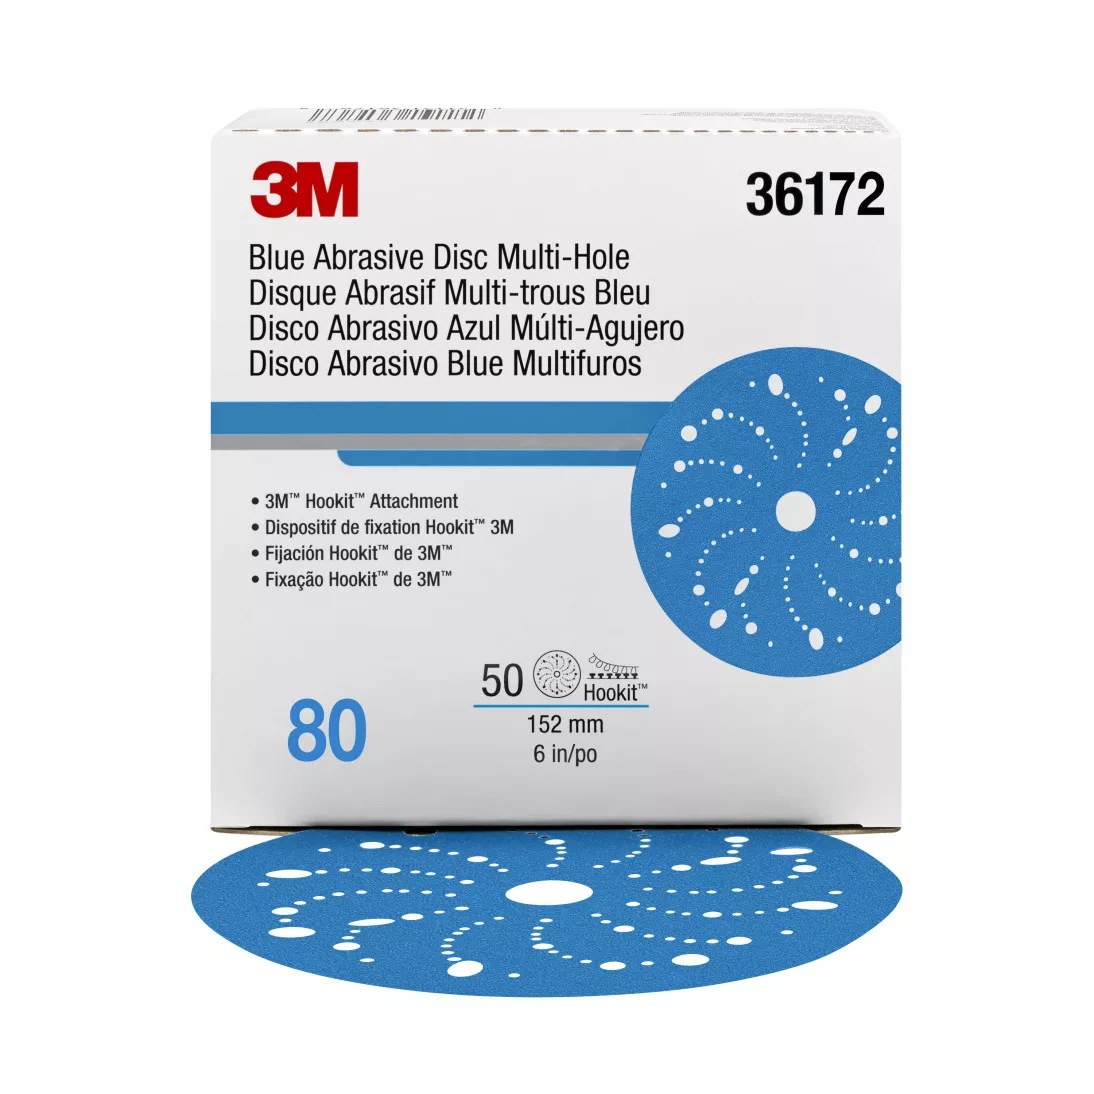 3M™ Hookit™ Blue Abrasive Disc Multi-hole, 36172, 6 in, 80 grade, 50
discs per carton, 4 cartons per case